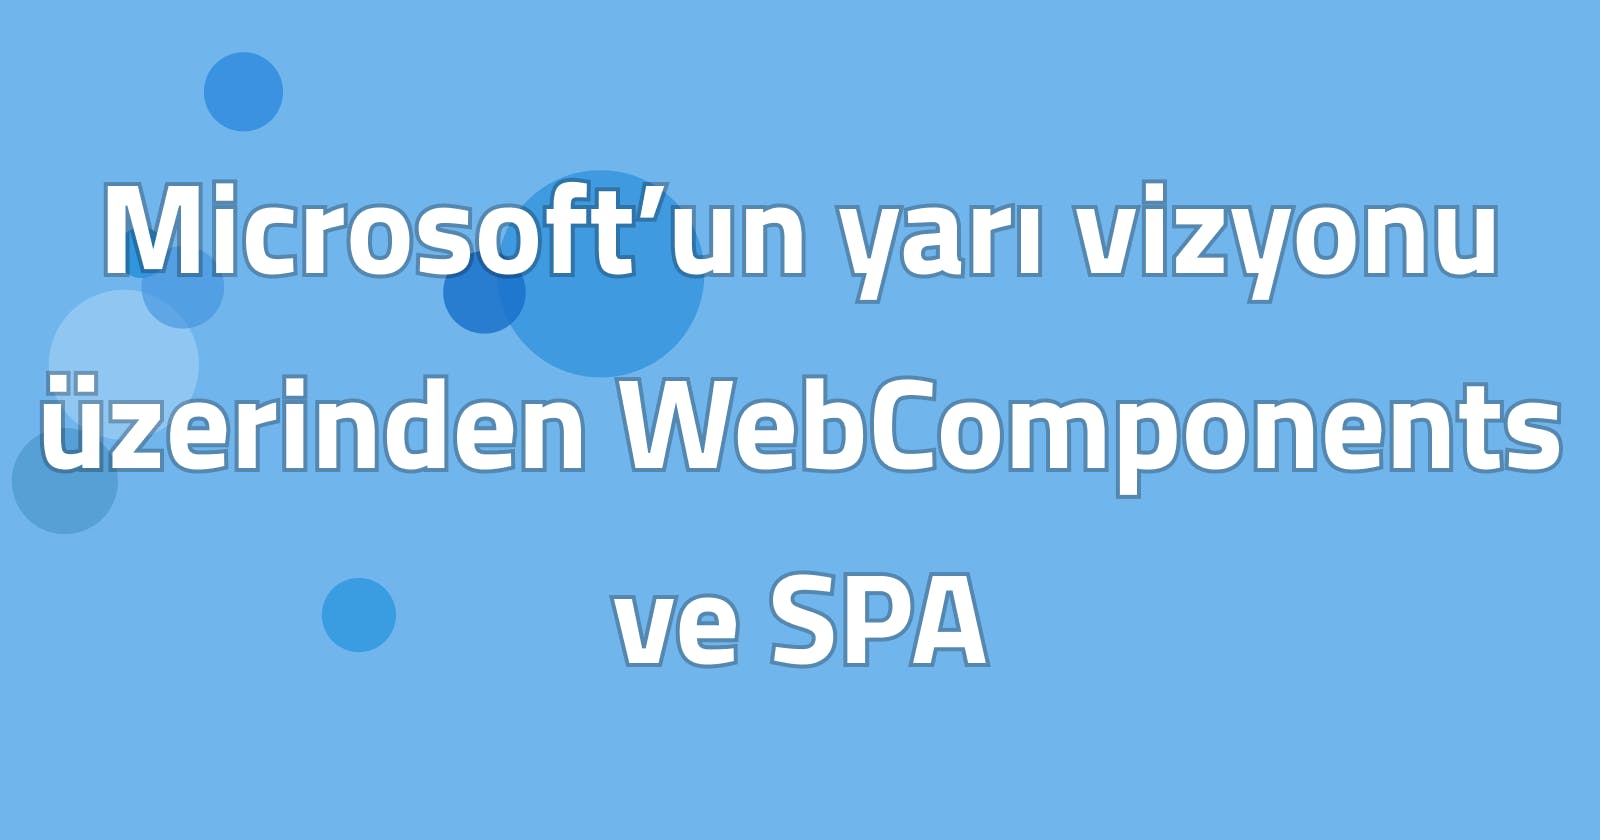 Microsoft’un yarı vizyonu üzerinden WebComponents ve SPA